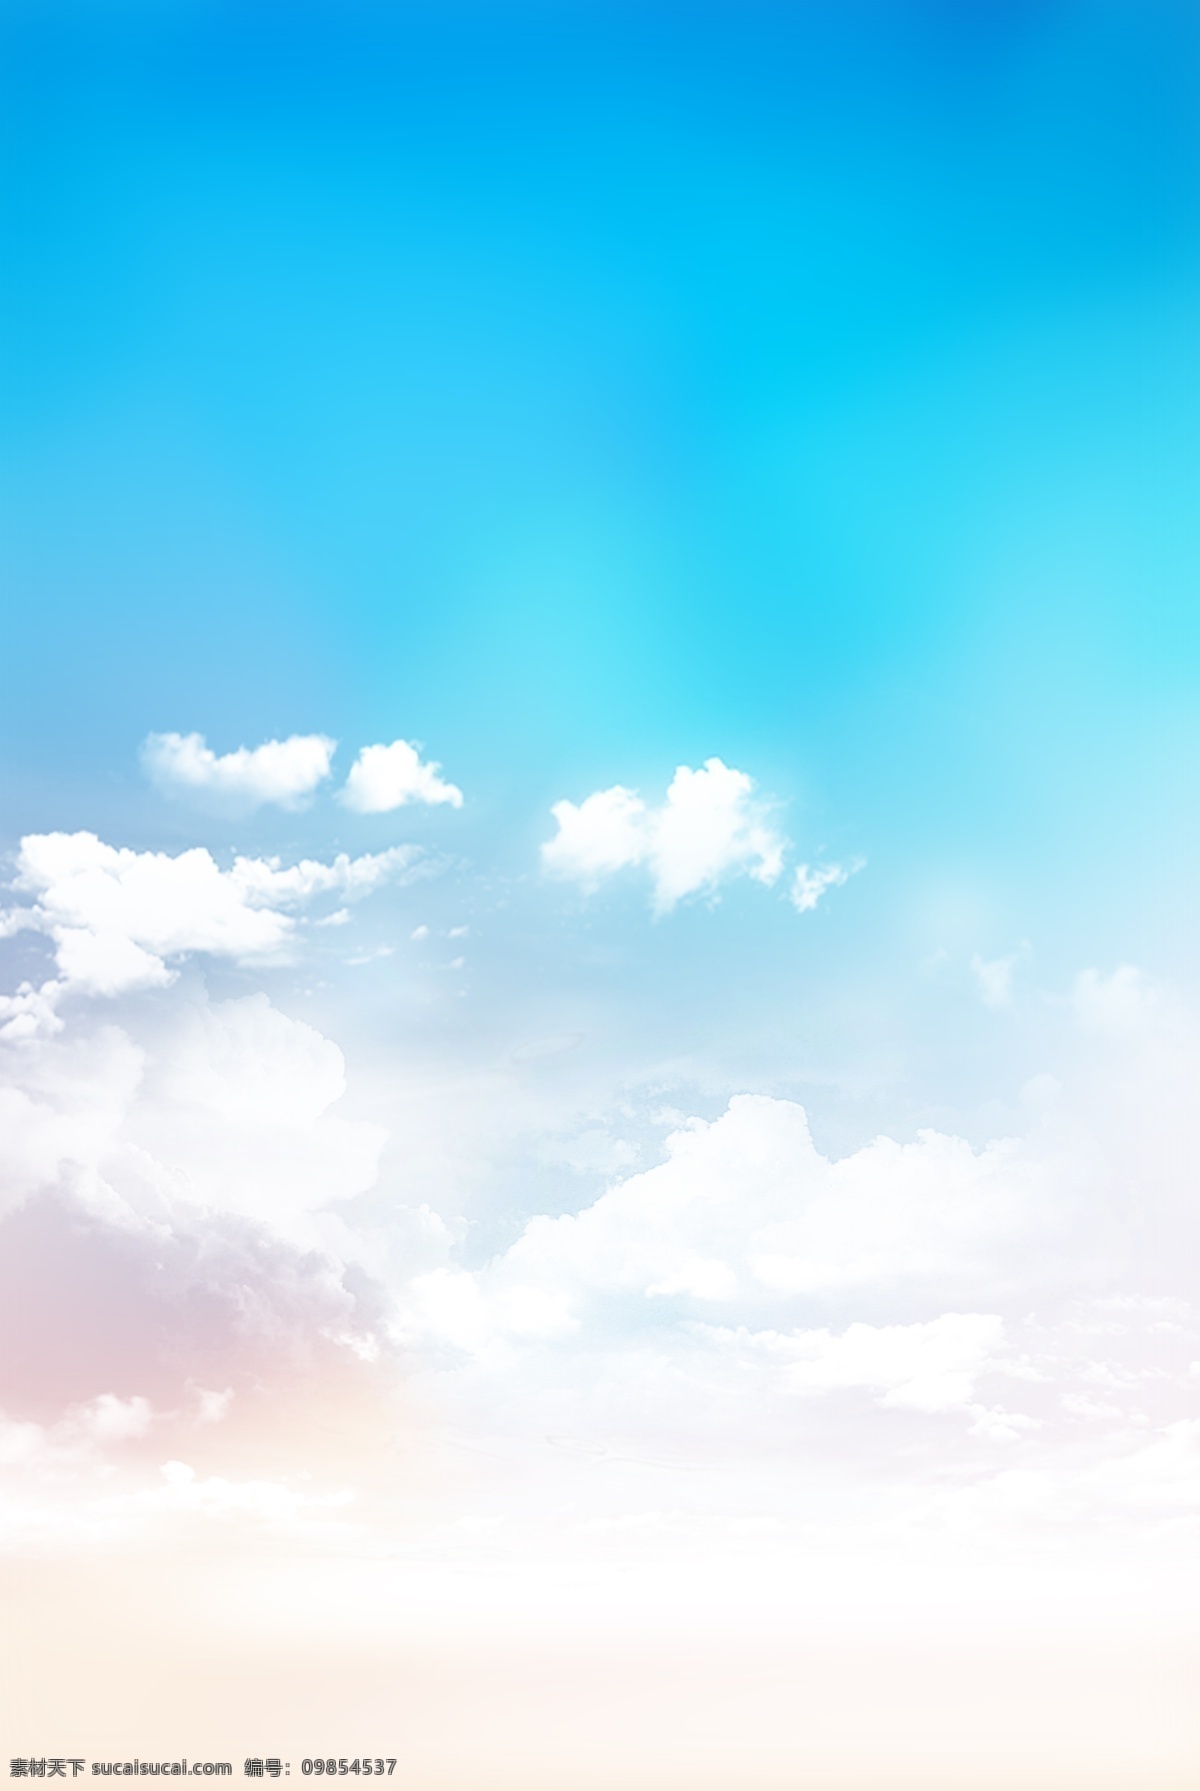 蓝天 白云 清新 天空 云朵 背景 背景素材